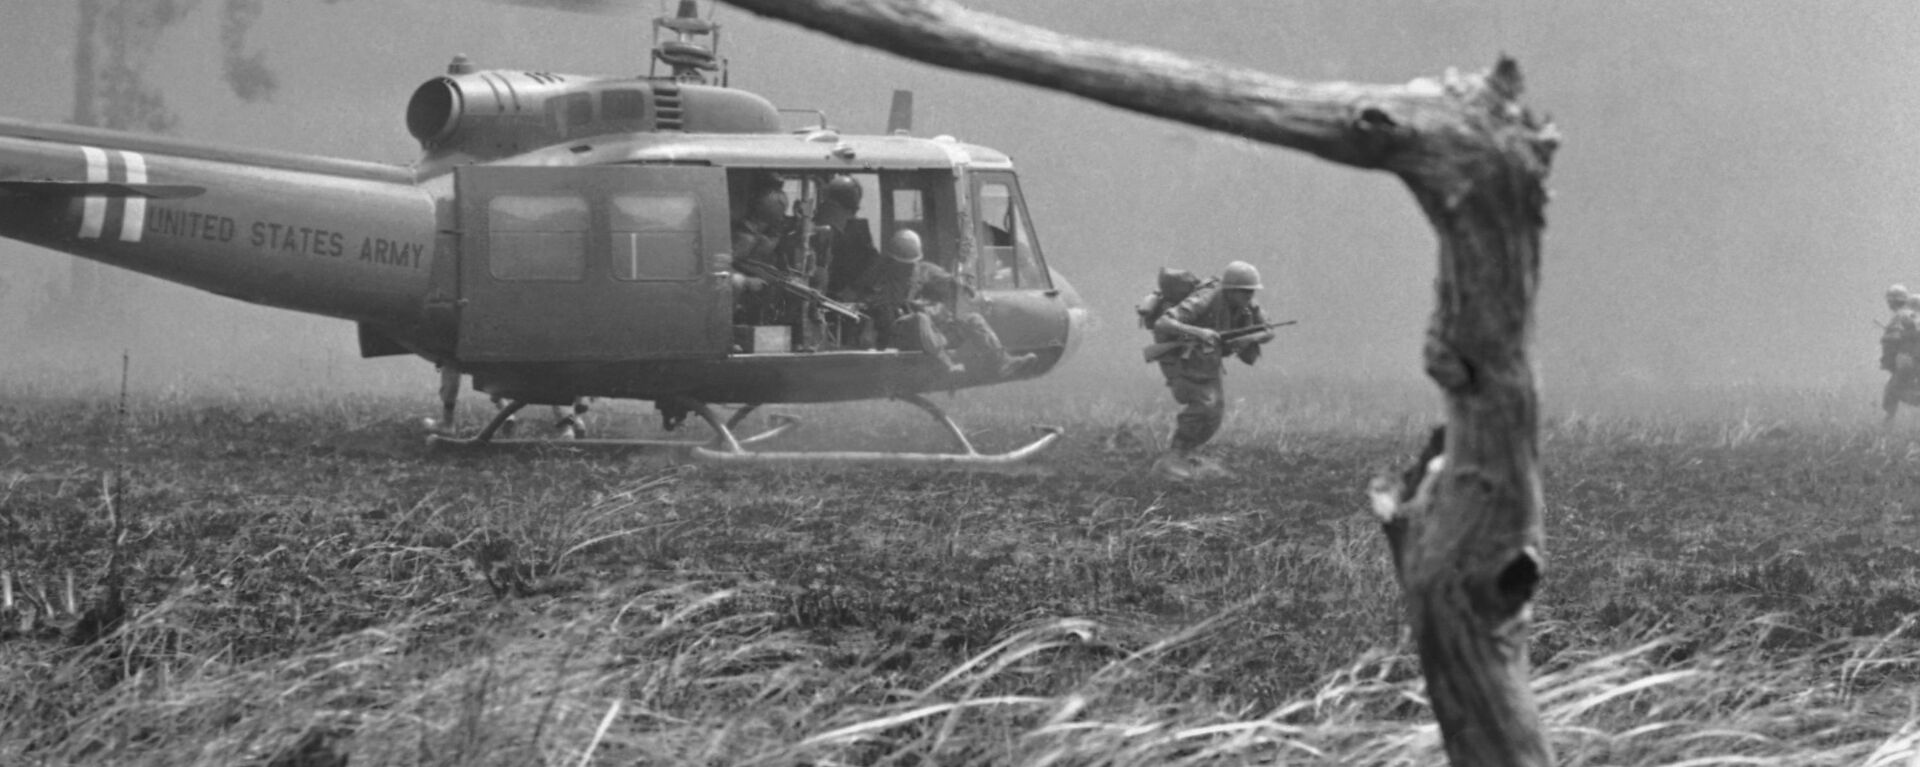 Lính thủy Mỹ trong khu vực chiến sự. Chiến tranh Việt Nam, năm 1967 - Sputnik Việt Nam, 1920, 10.12.2020